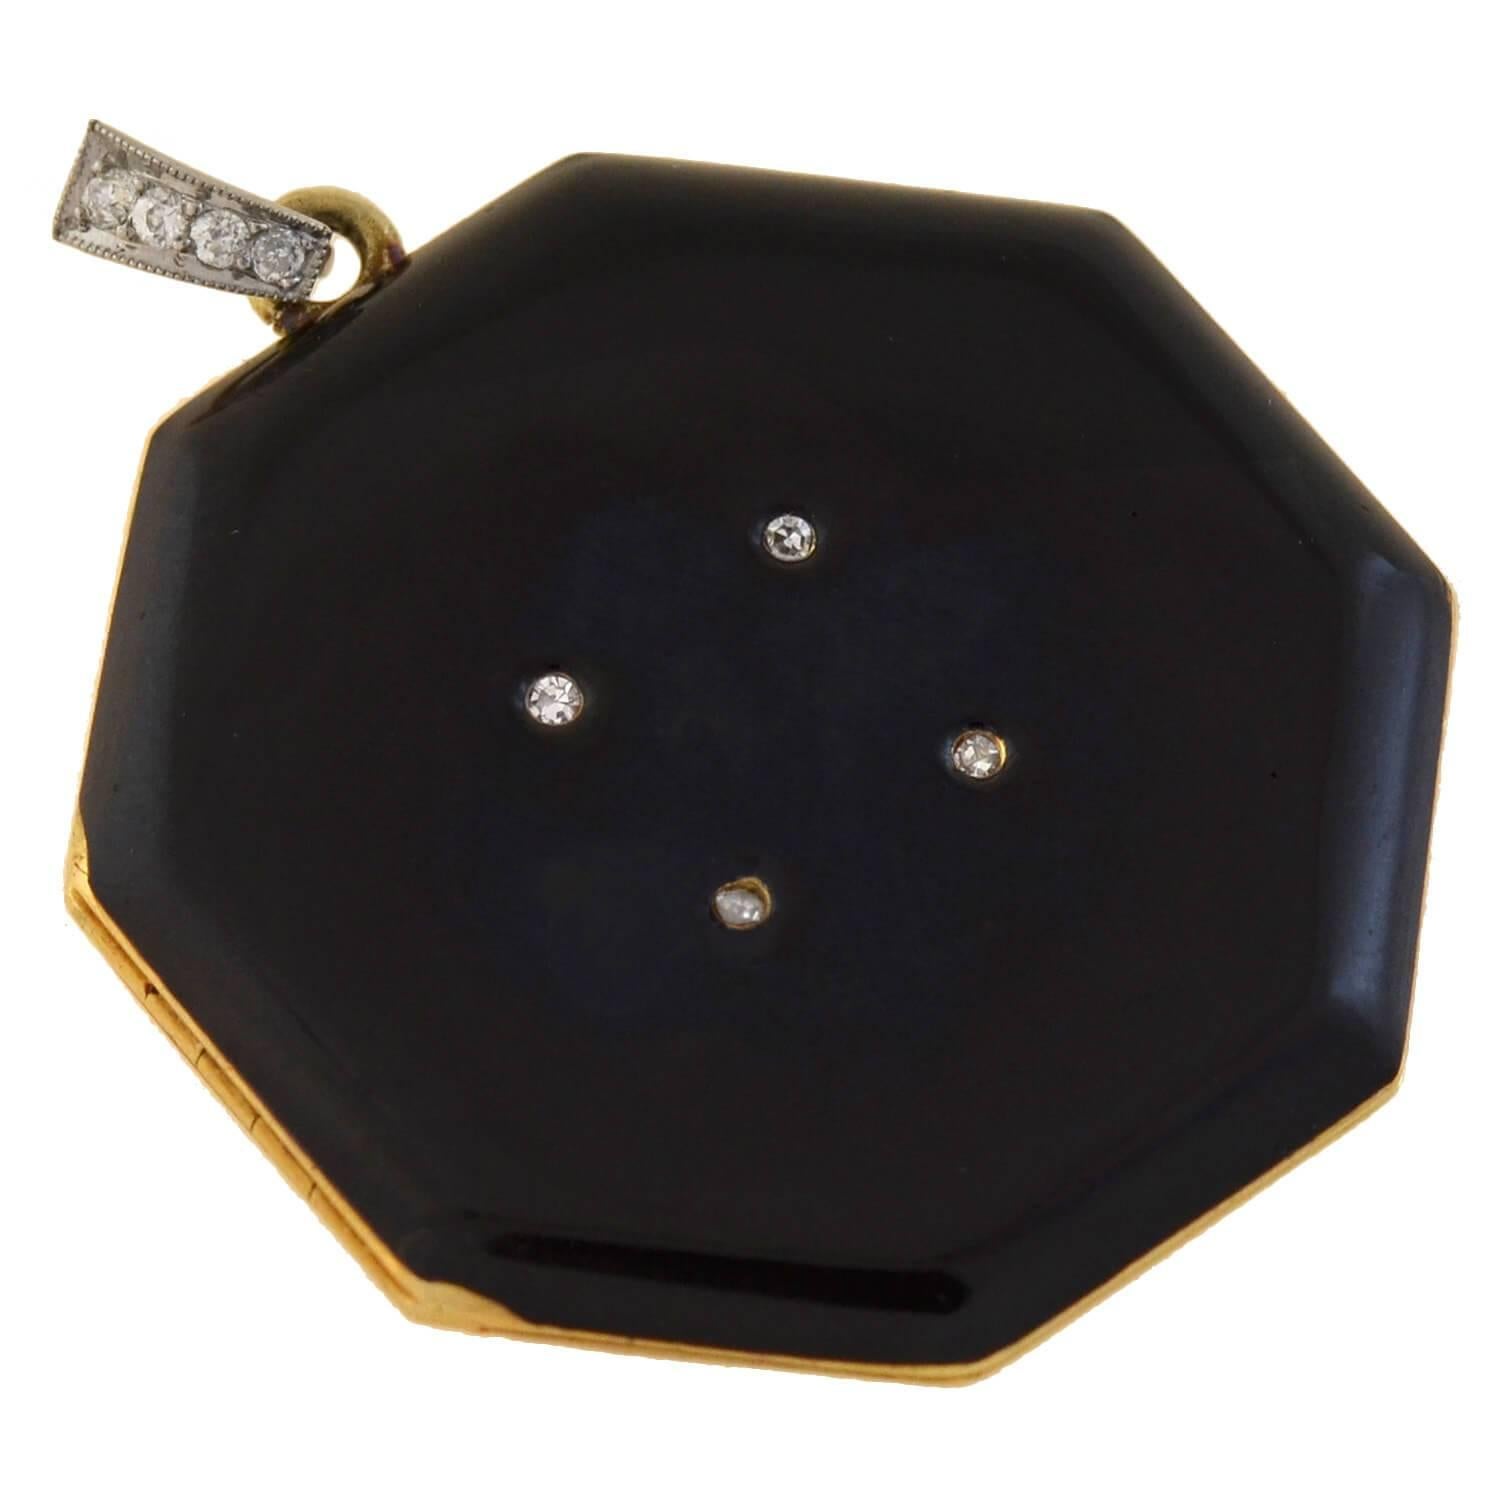 Ein wunderschönes Medaillon aus der Edwardianischen Ära (ca. 1910) vom legendären Designer Tiffany & Co Das achteckige Schmuckstück ist aus 14-karätigem Gelbgold gefertigt und beidseitig mit schwarzer, glänzender Emaille verziert. Vier Diamanten im